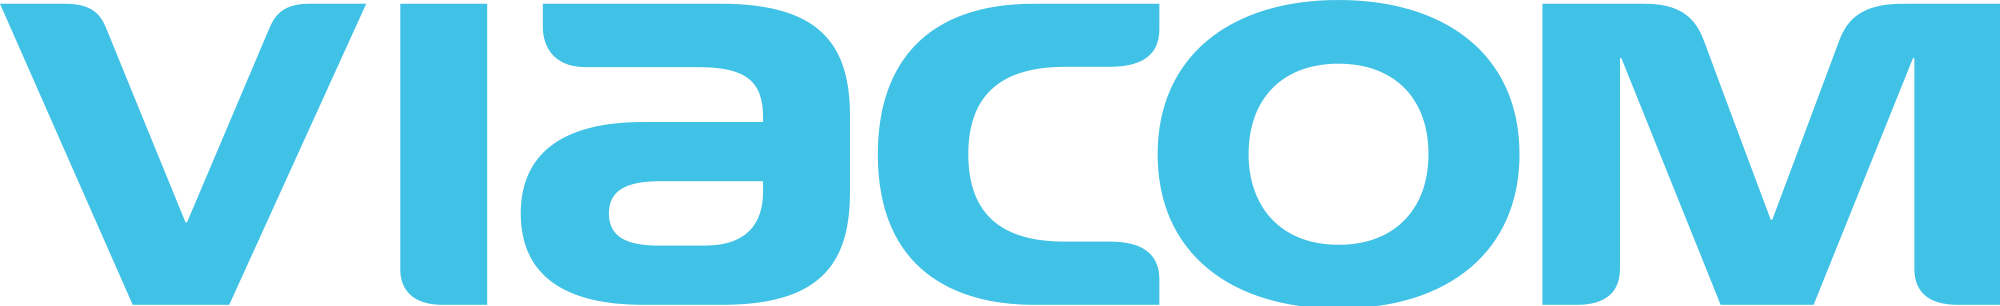 Viacom-Logo-1.png